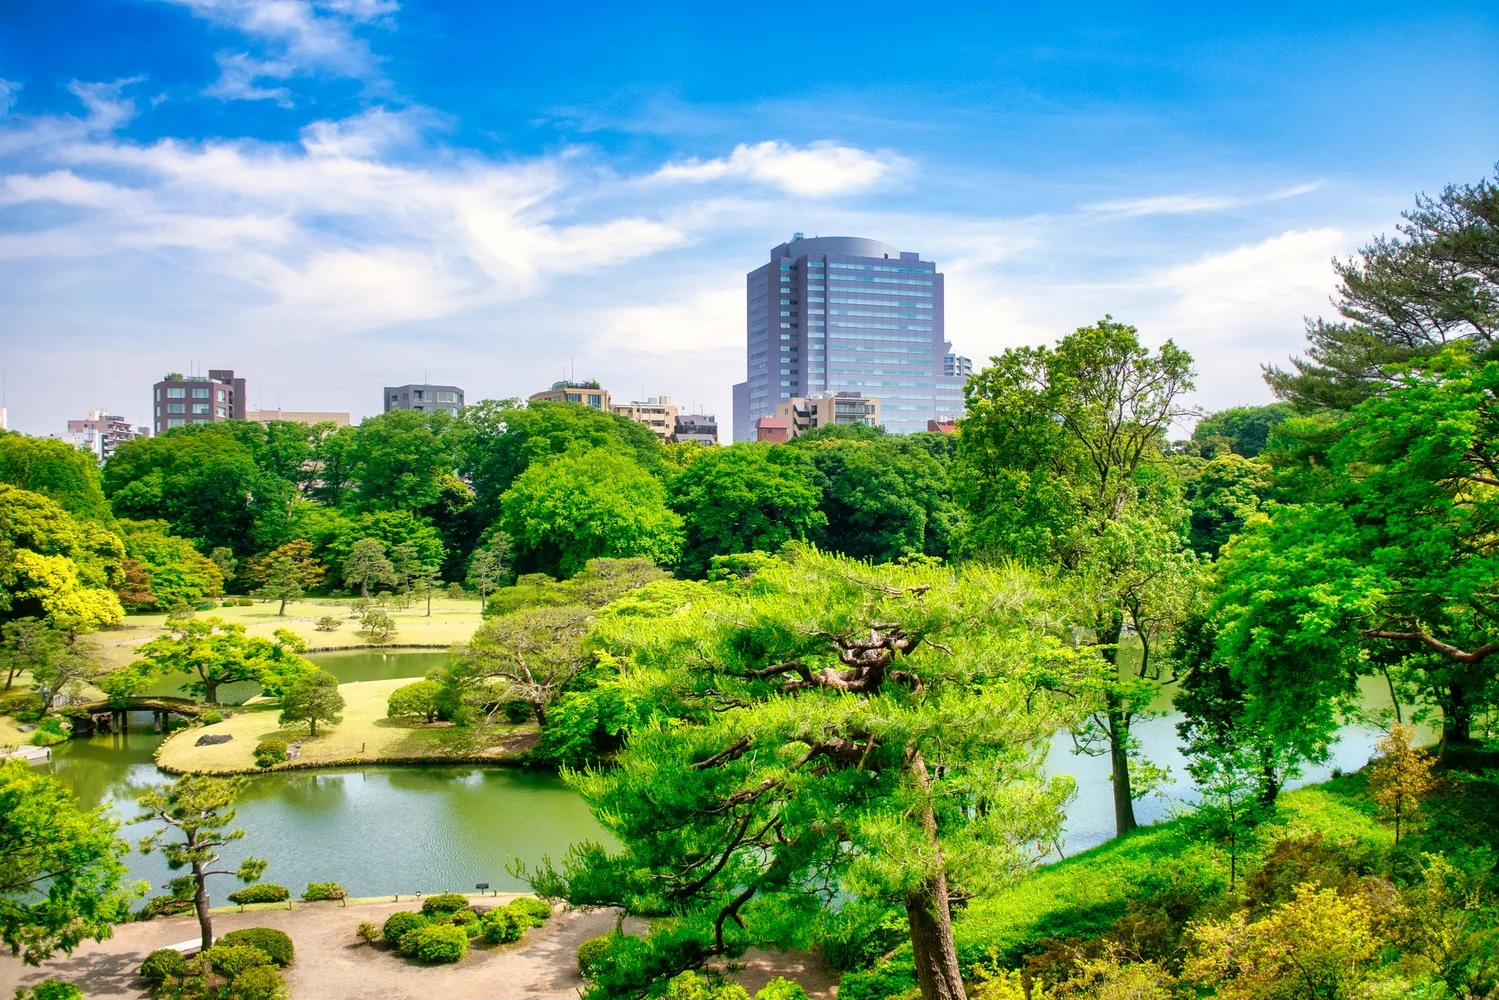 Rikugien Gardens Admission Ticket in Tokyo